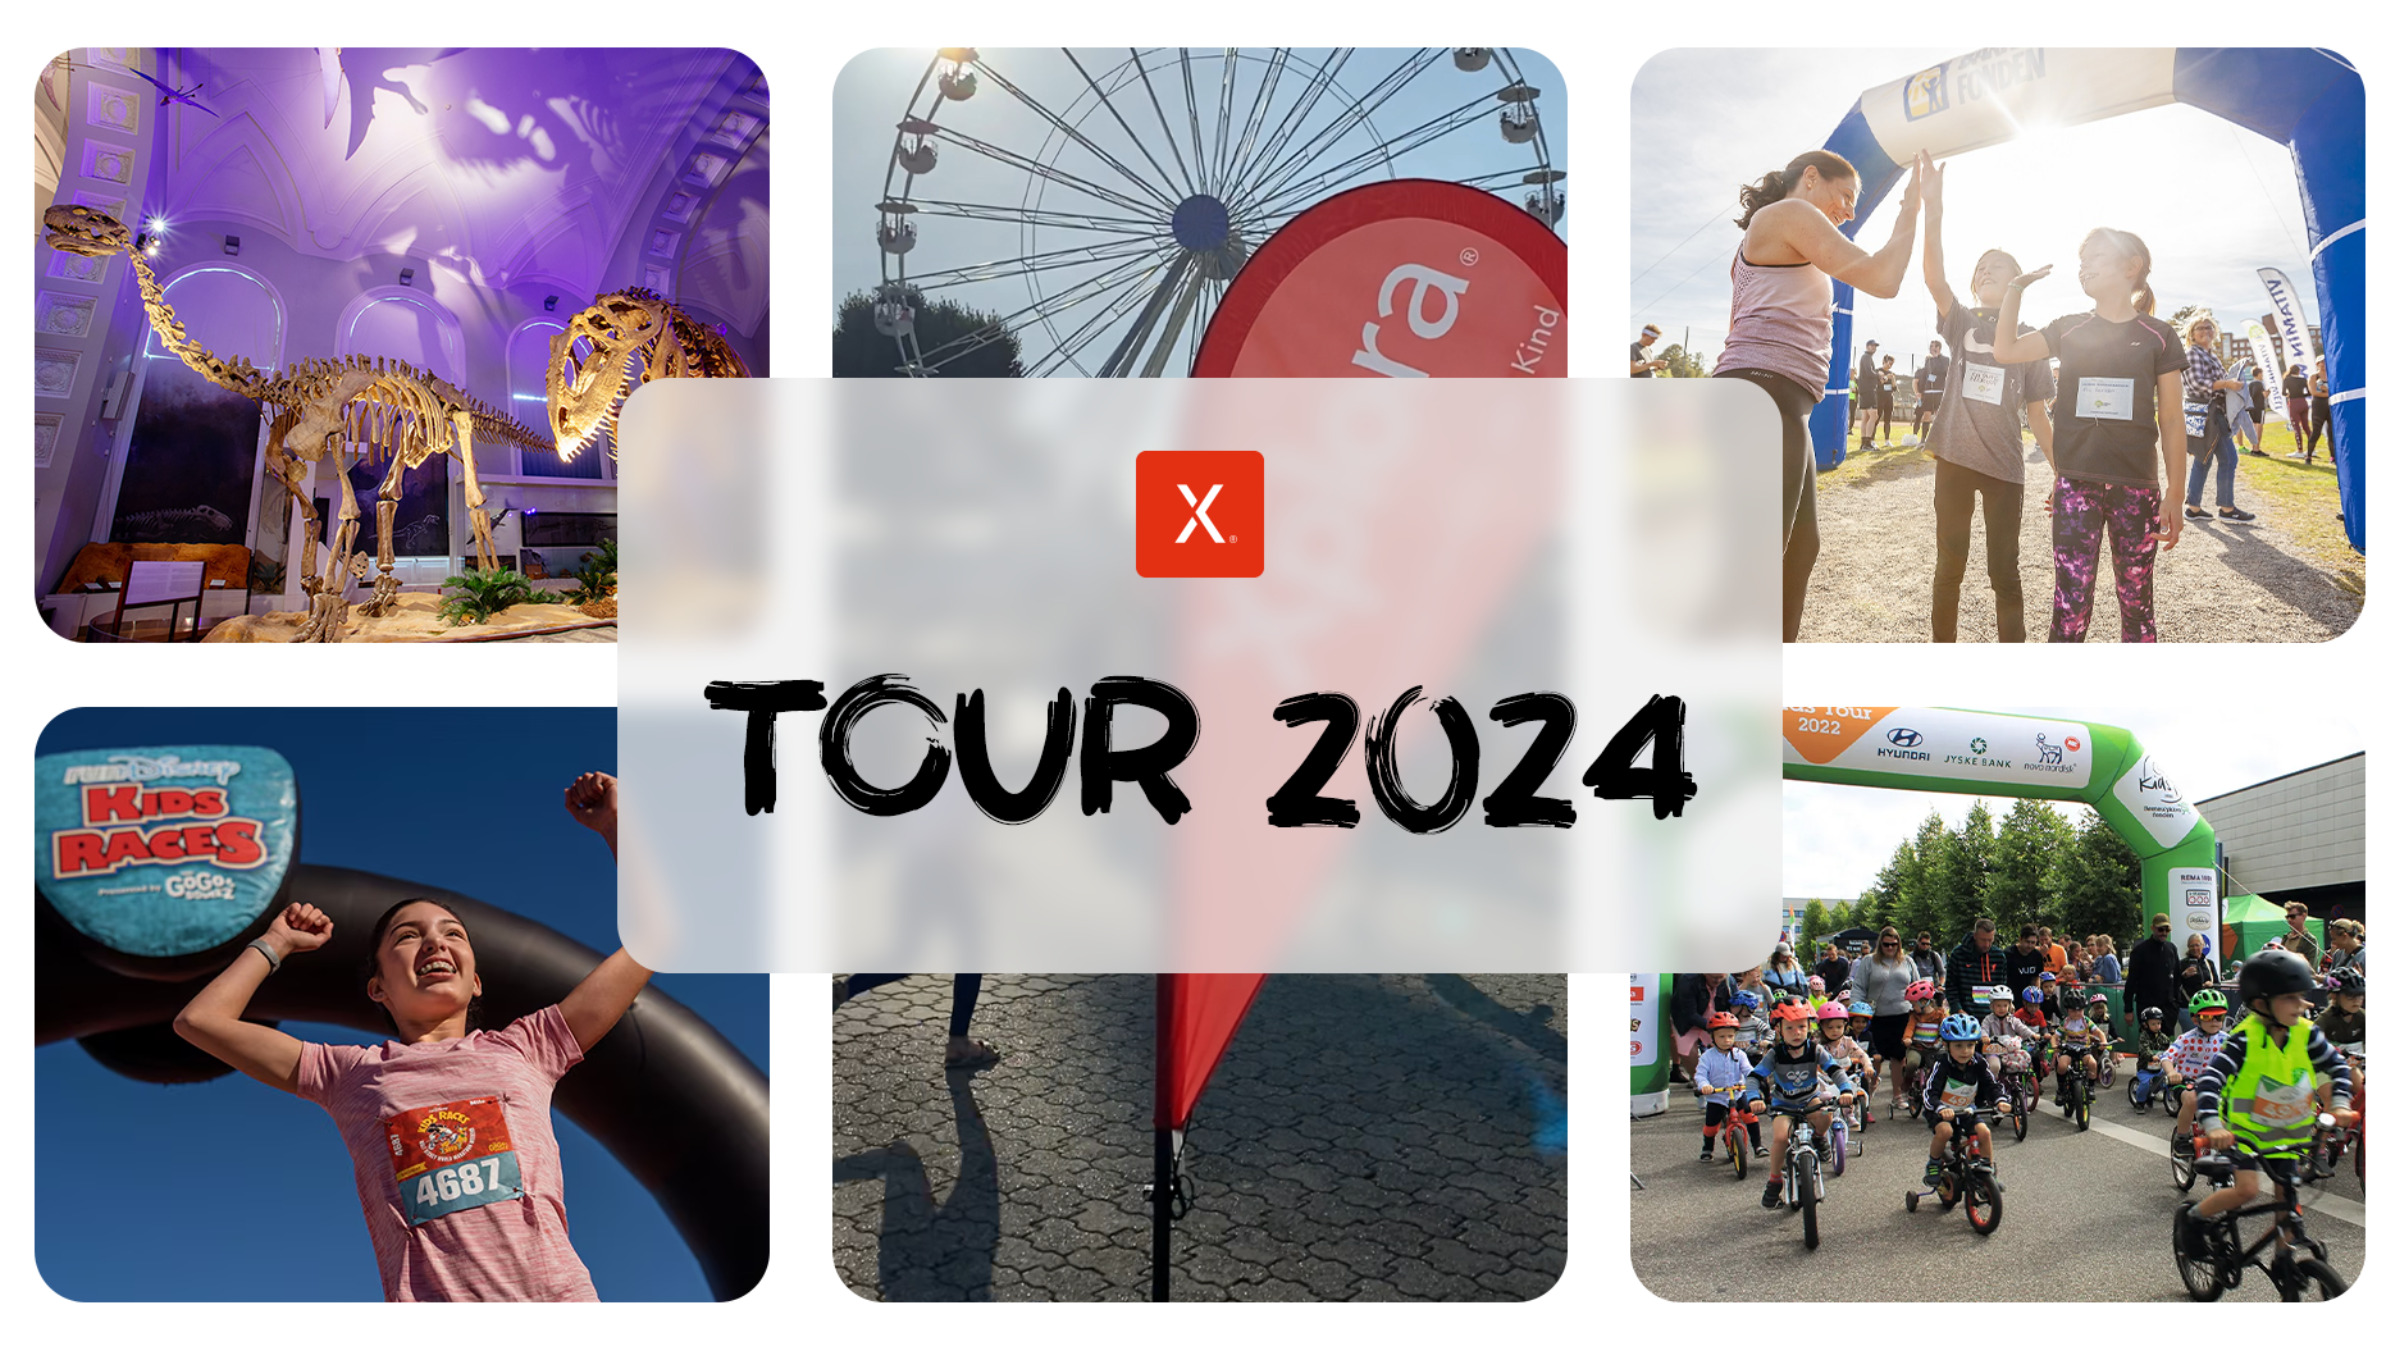 Xplora Tour 2024 i København: Xplora med til Danmarks største cykelløb for børn